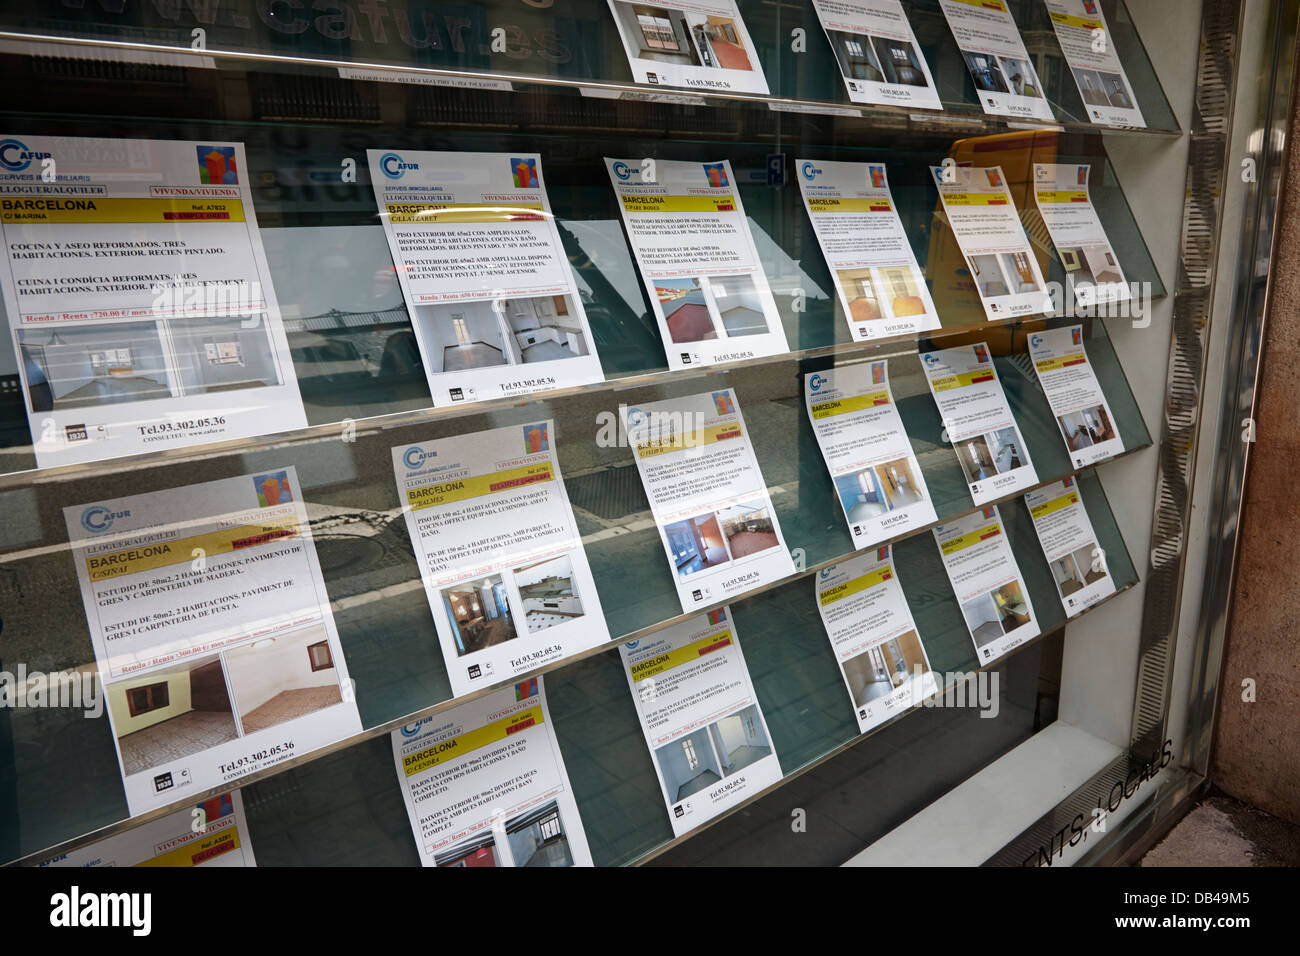 Appartements et maisons à louer dans la fenêtre d'une agence immobilière à Barcelone Catalogne Espagne Banque D'Images